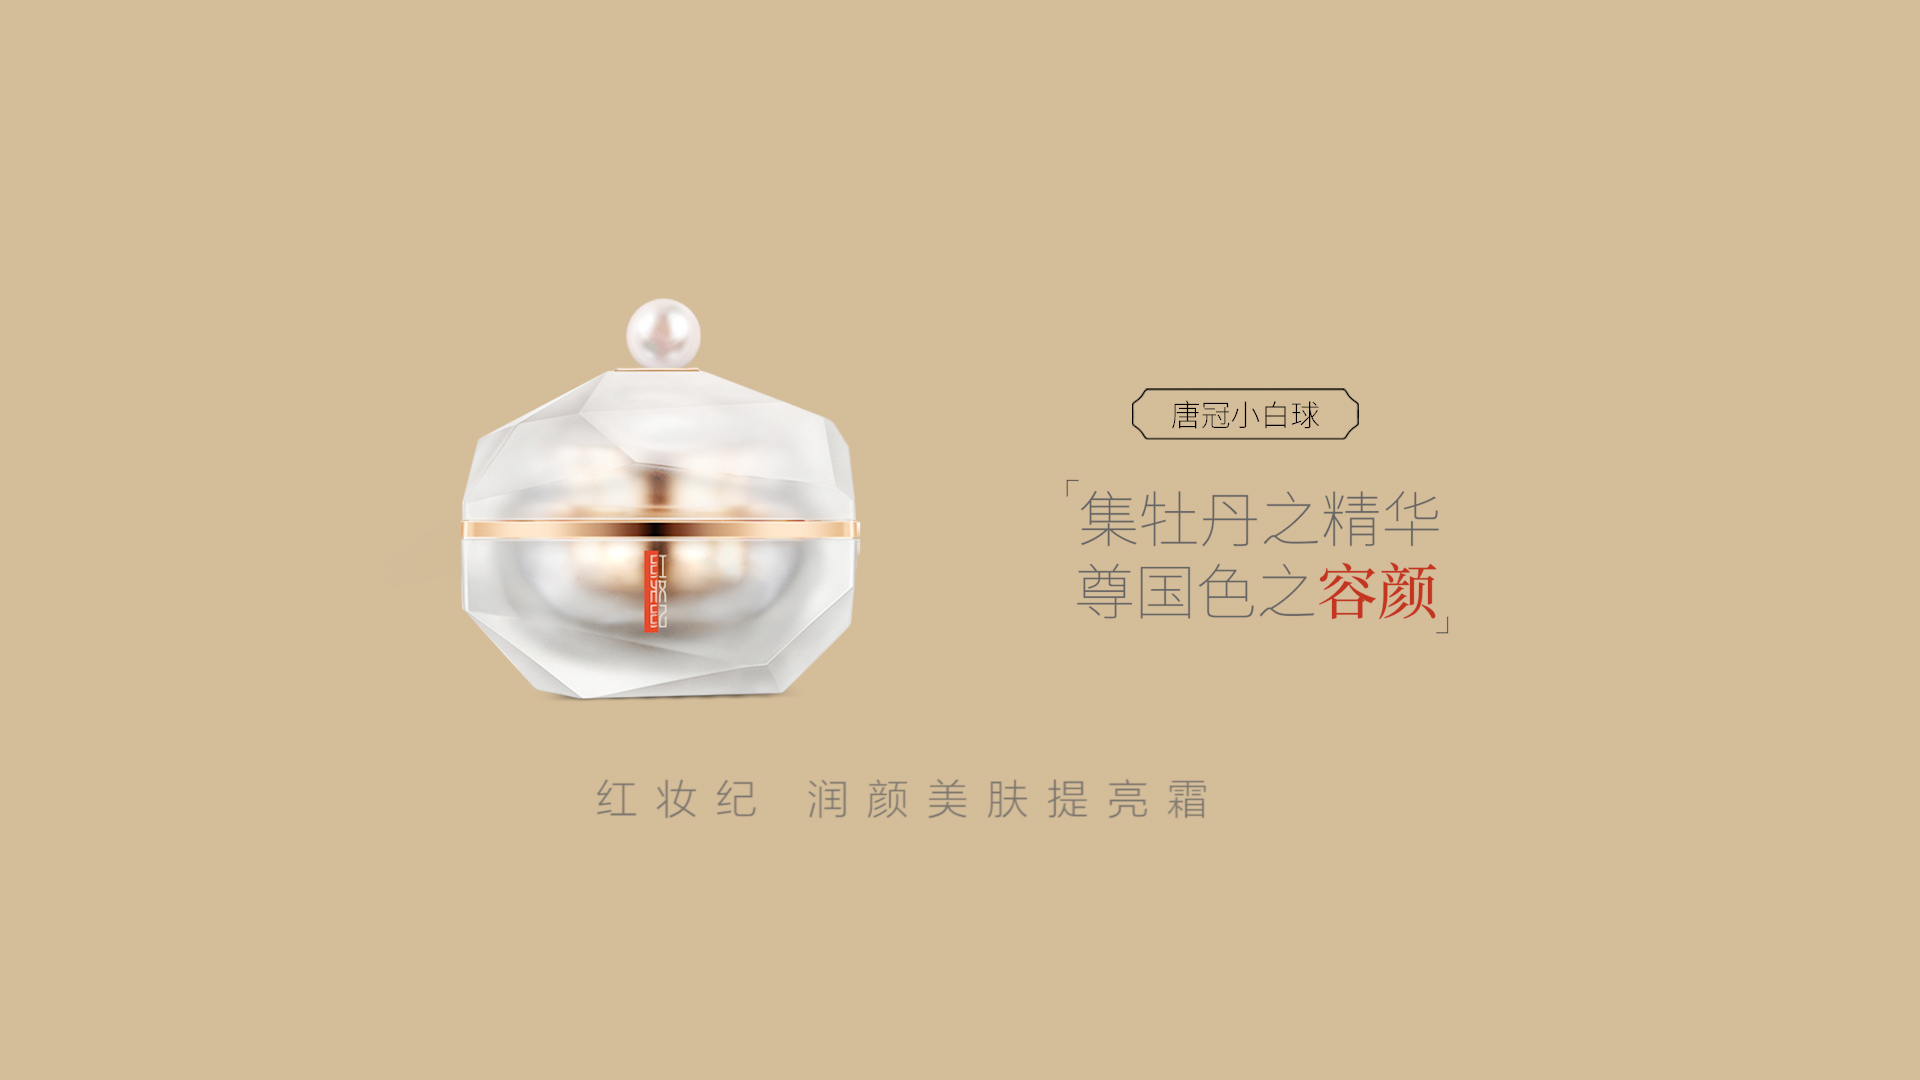 红妆纪-杭州东芳生物科技有限公司